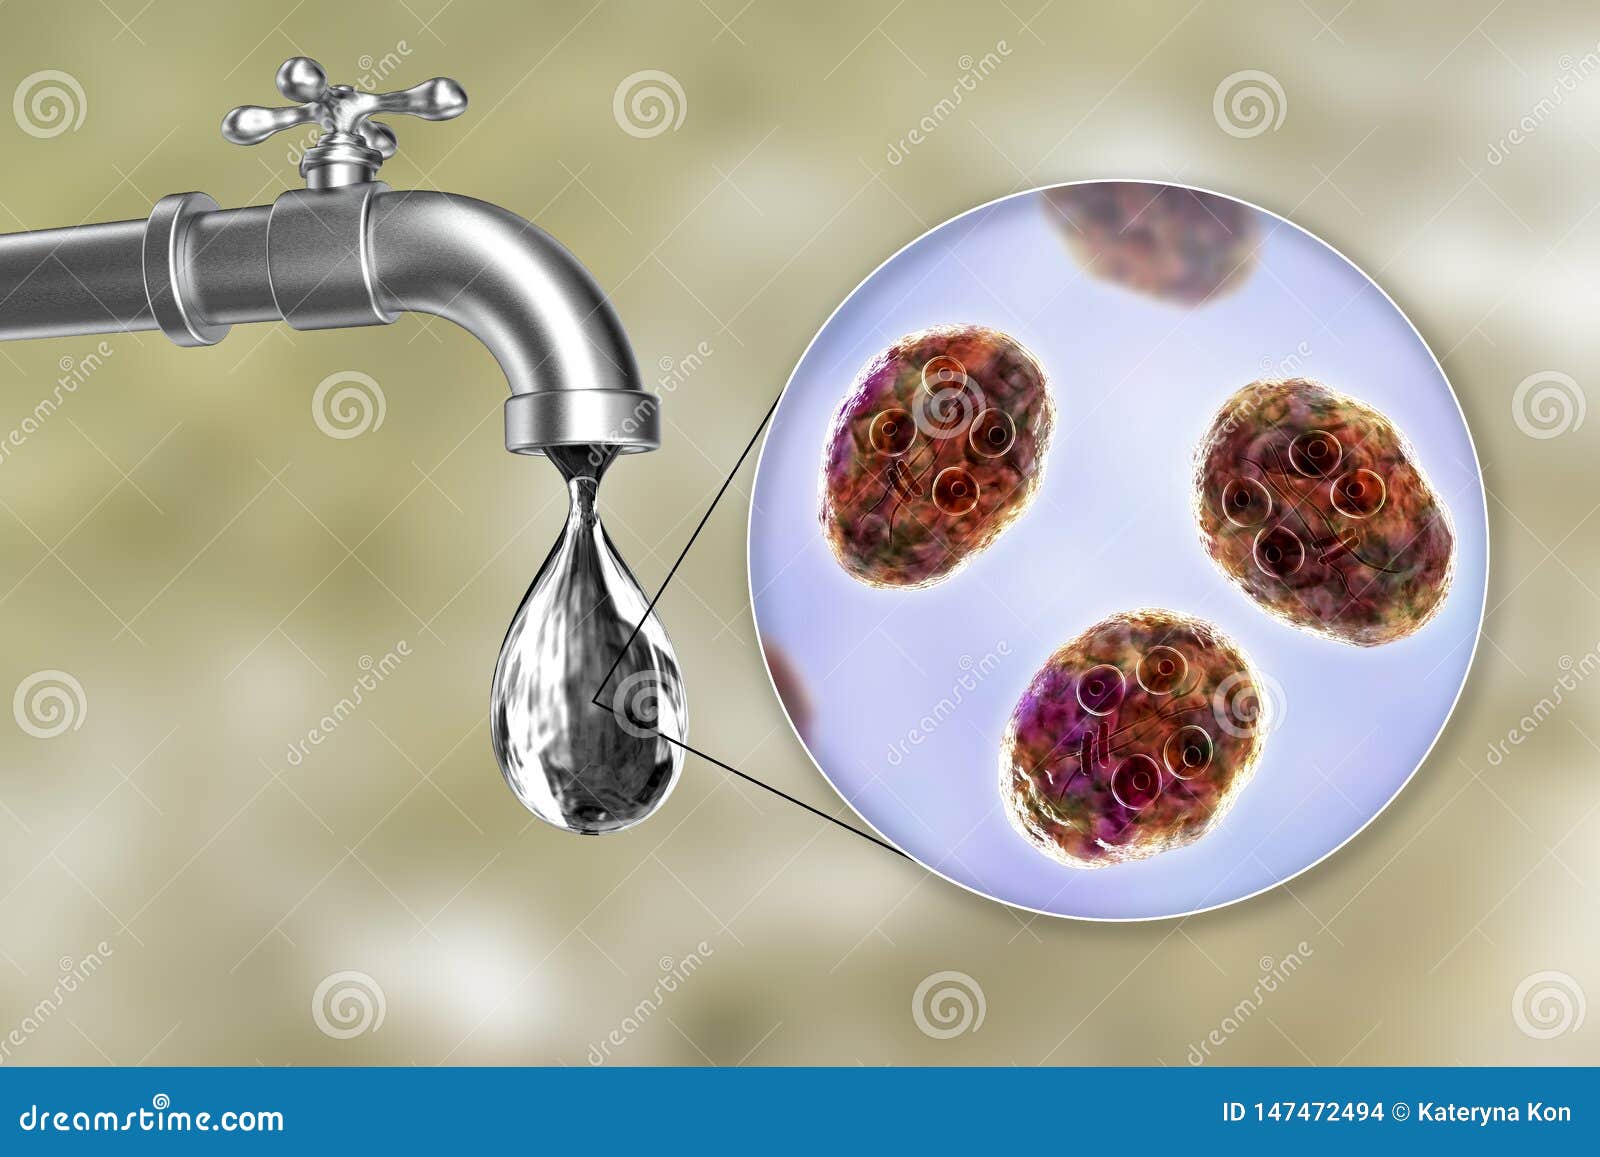 giardia in drinking water